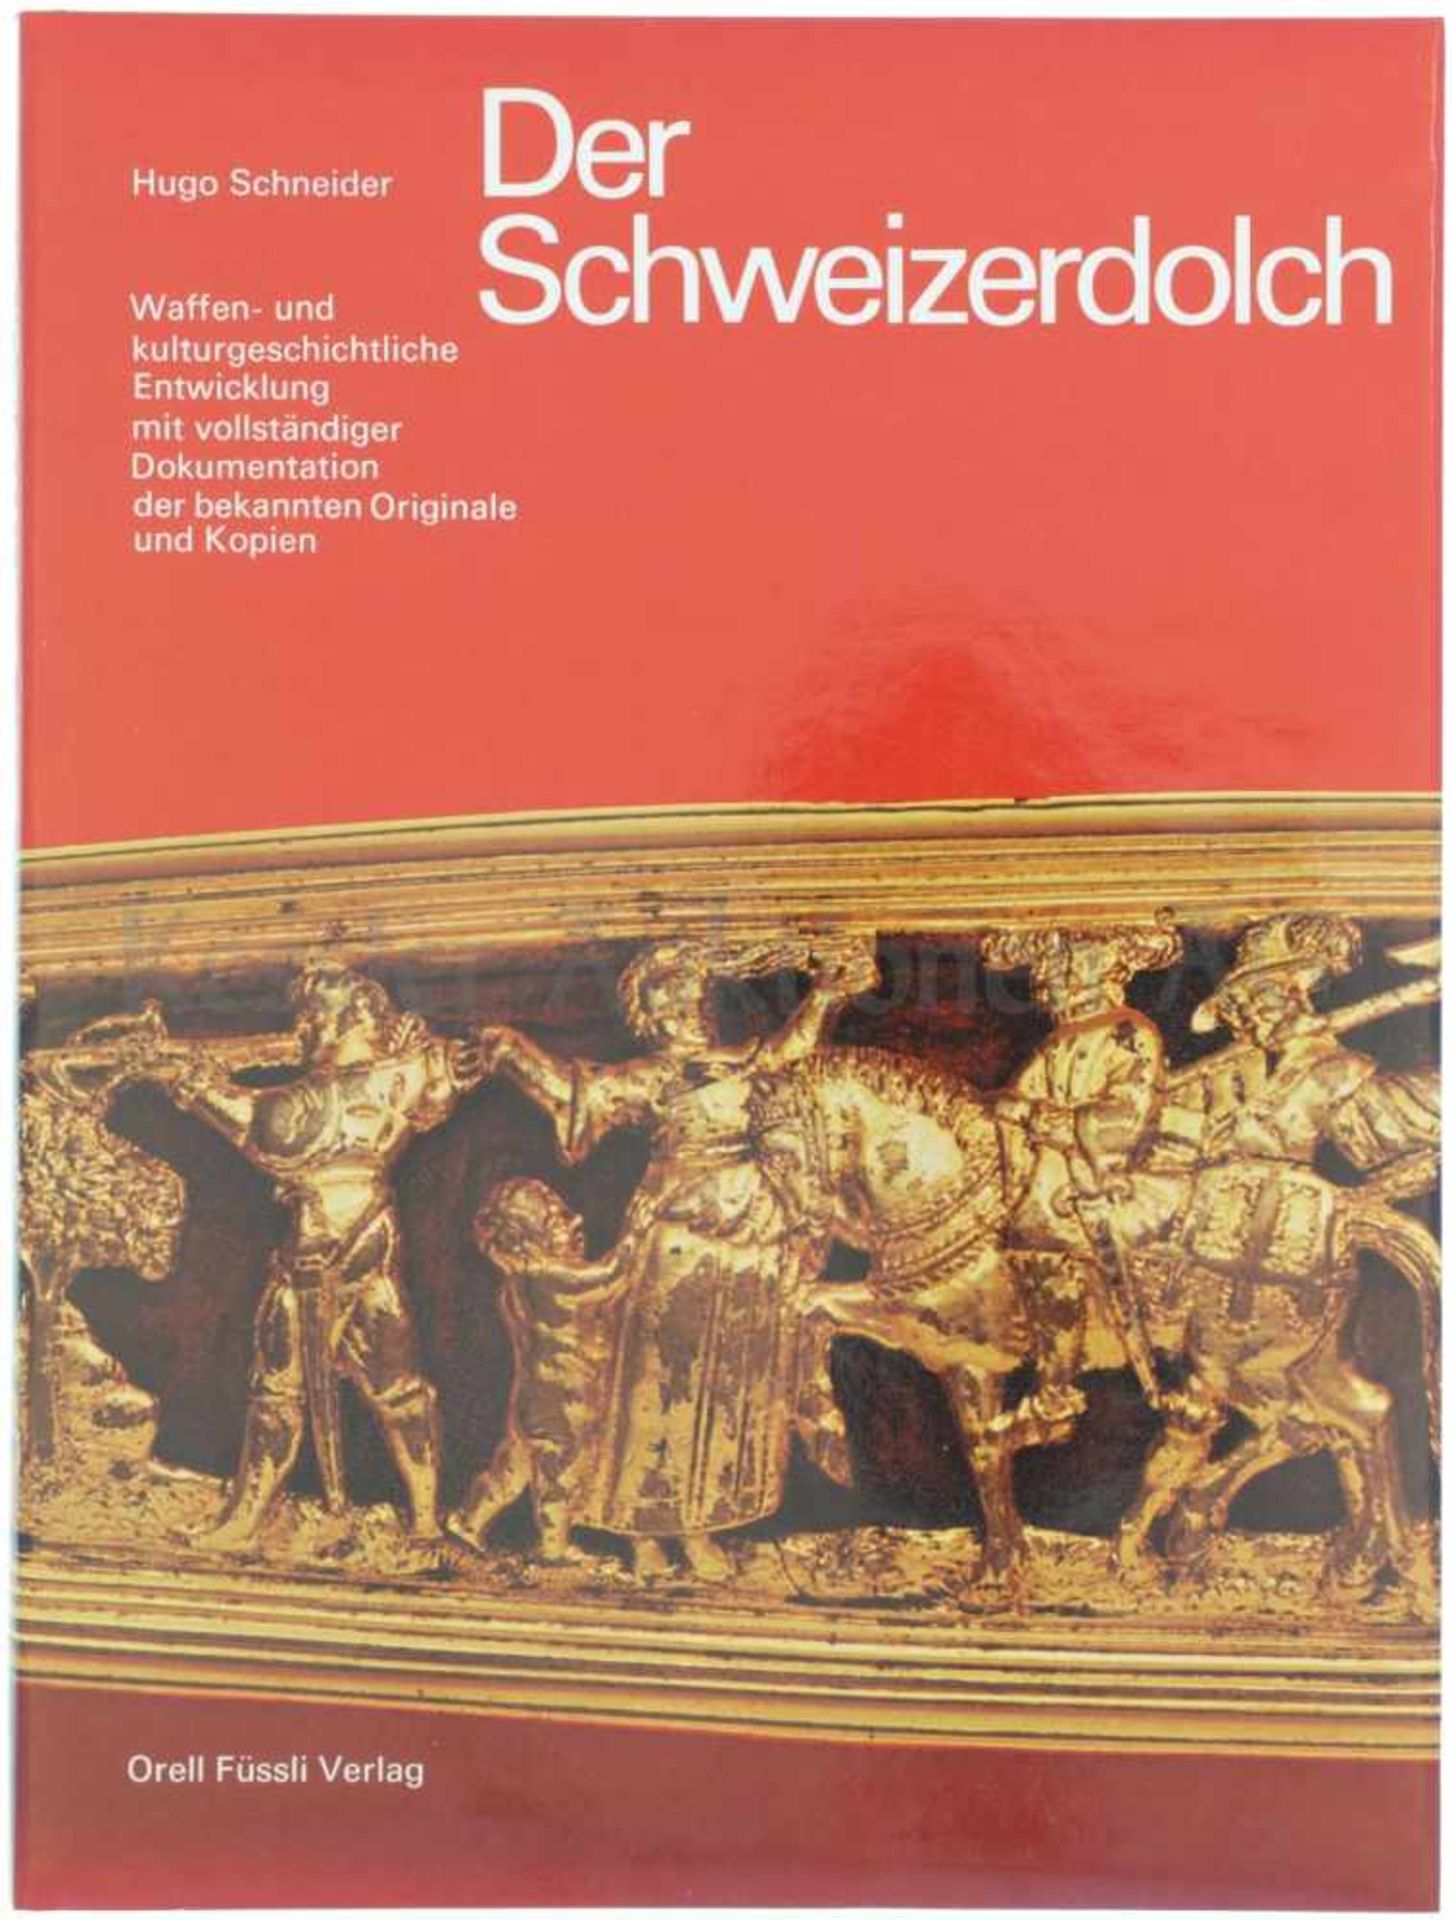 Der Schweizerdolch Autor Dr. Hugo Schneider 1977. Standardwerk über die waffen- und